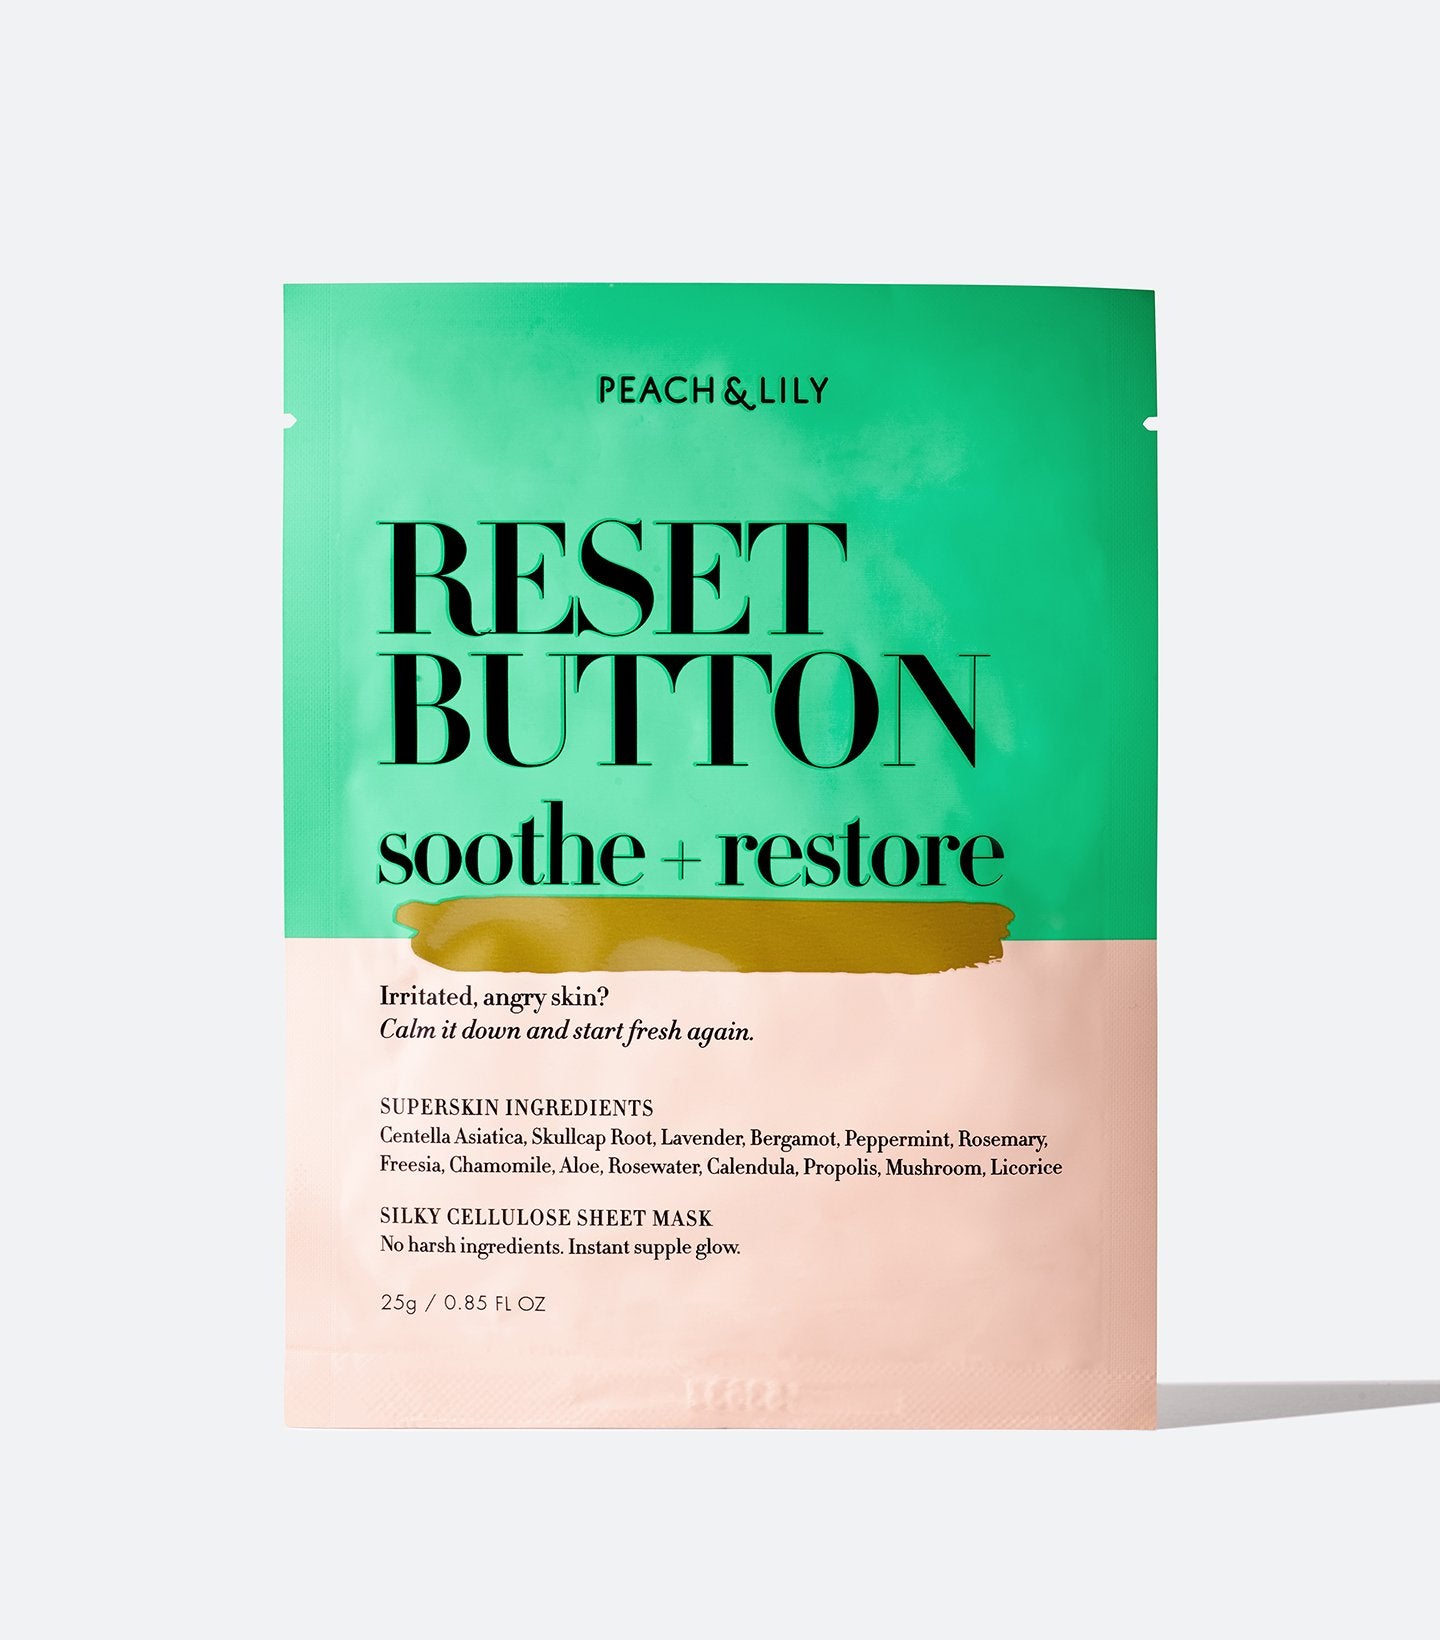 Reset Button Soothe + Restore Sheet Mask